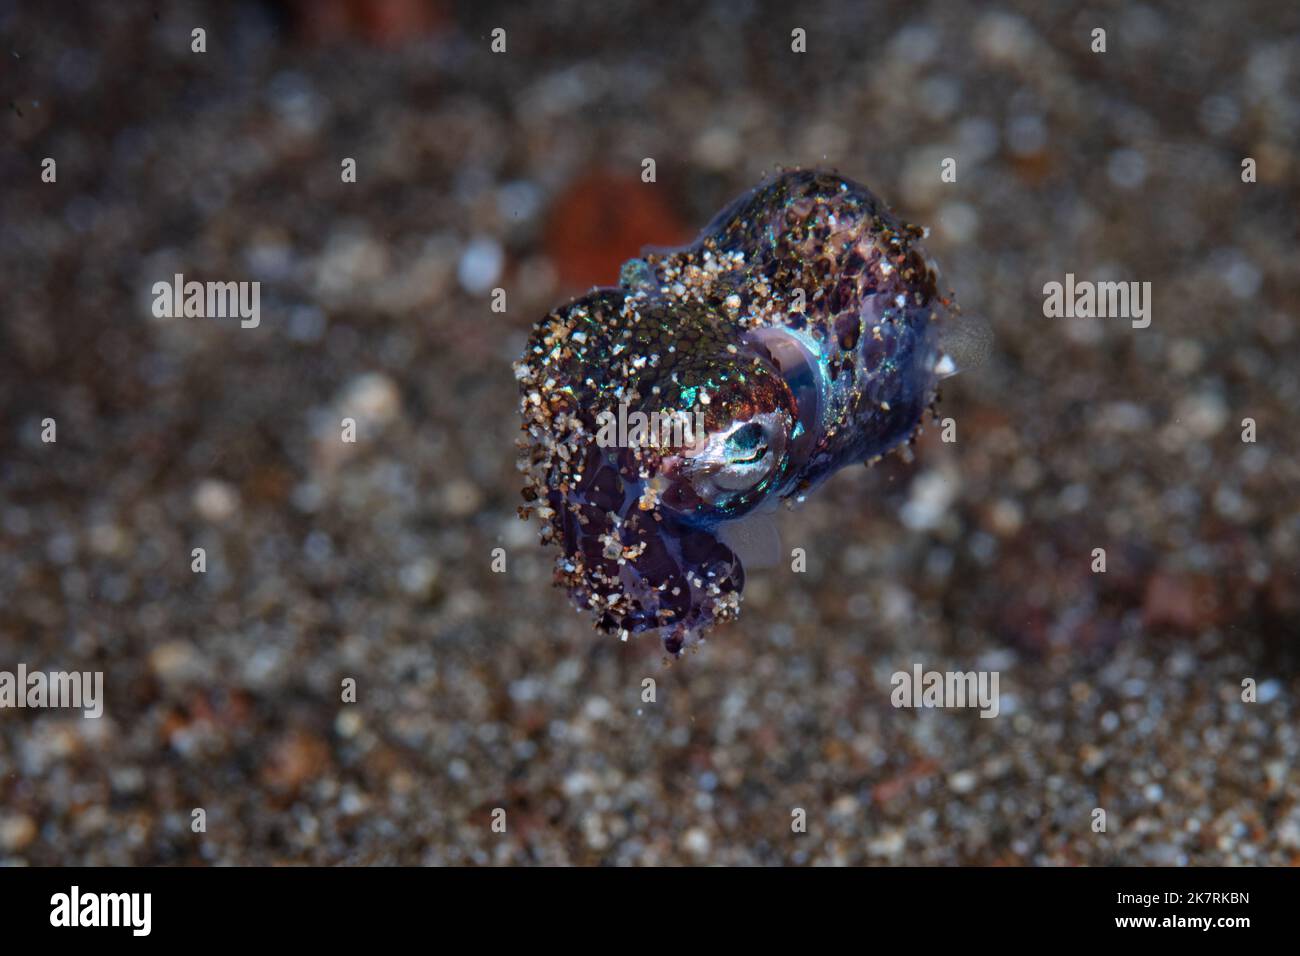 Ein nachtaktiver Bobtail-Tintenfisch, Euprymna berryi, schwebt über Sand. Diese Cephonopoden verwenden symbiotische lumineszierende Bakterien, um ihre Silhouette zu manipulieren. Stockfoto